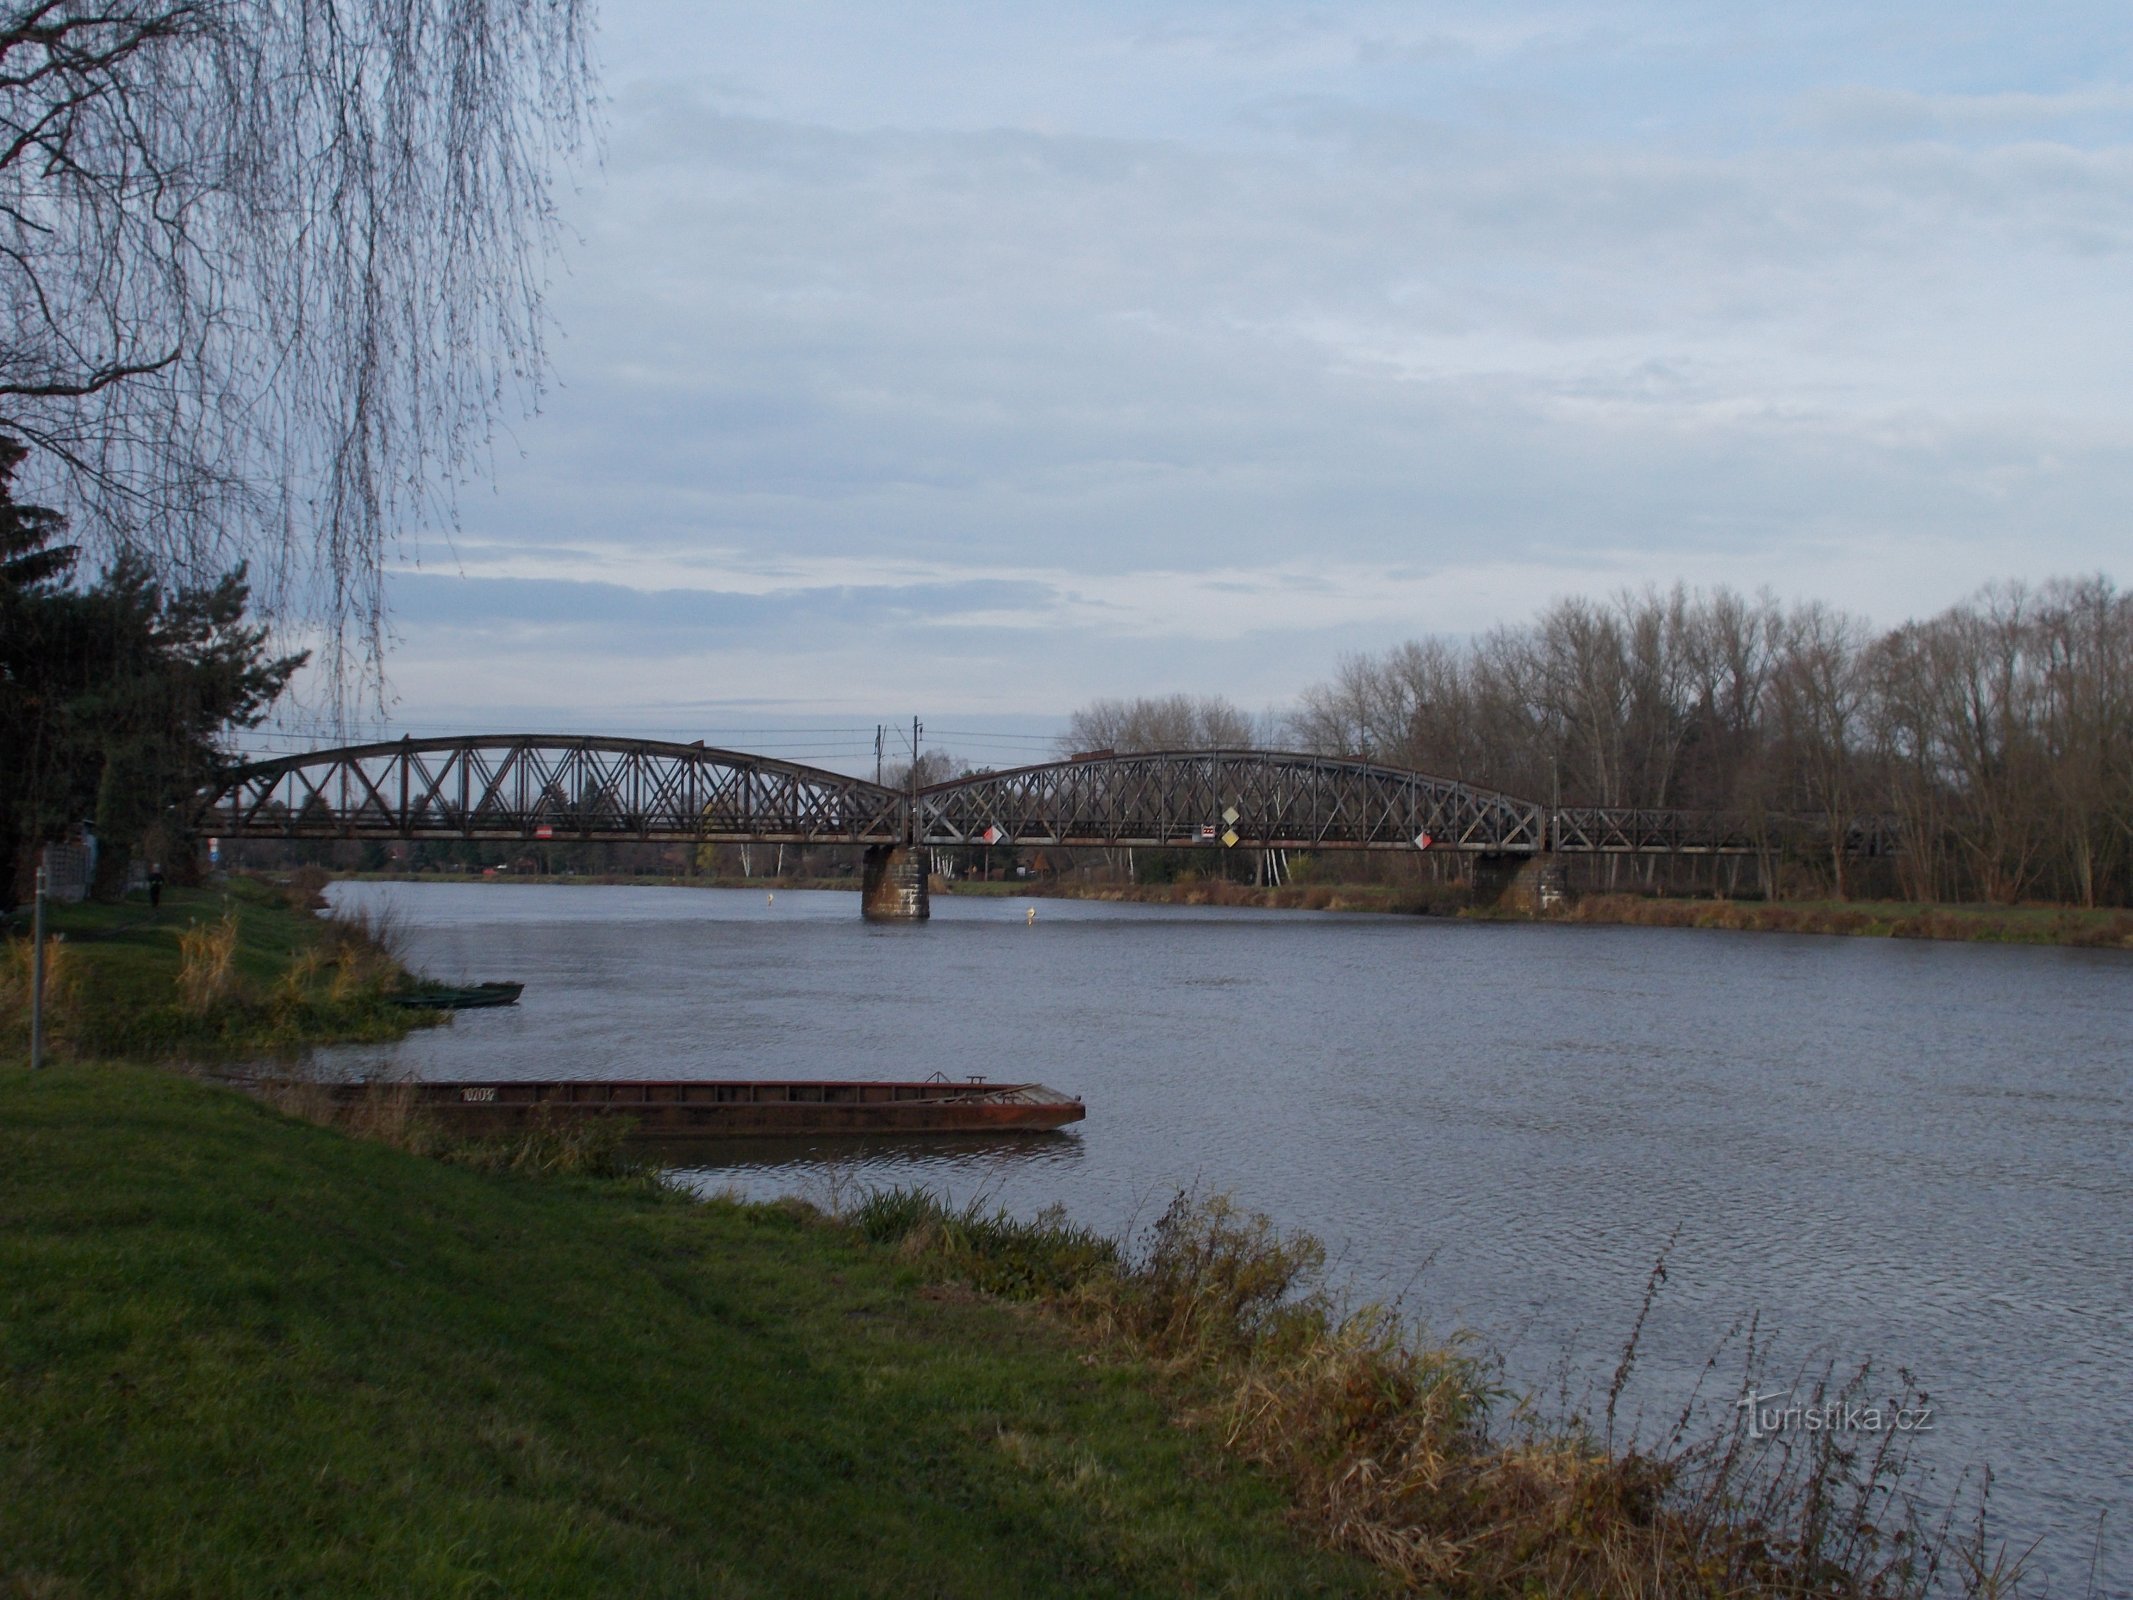 Čelákovice railway bridge over the Elbe